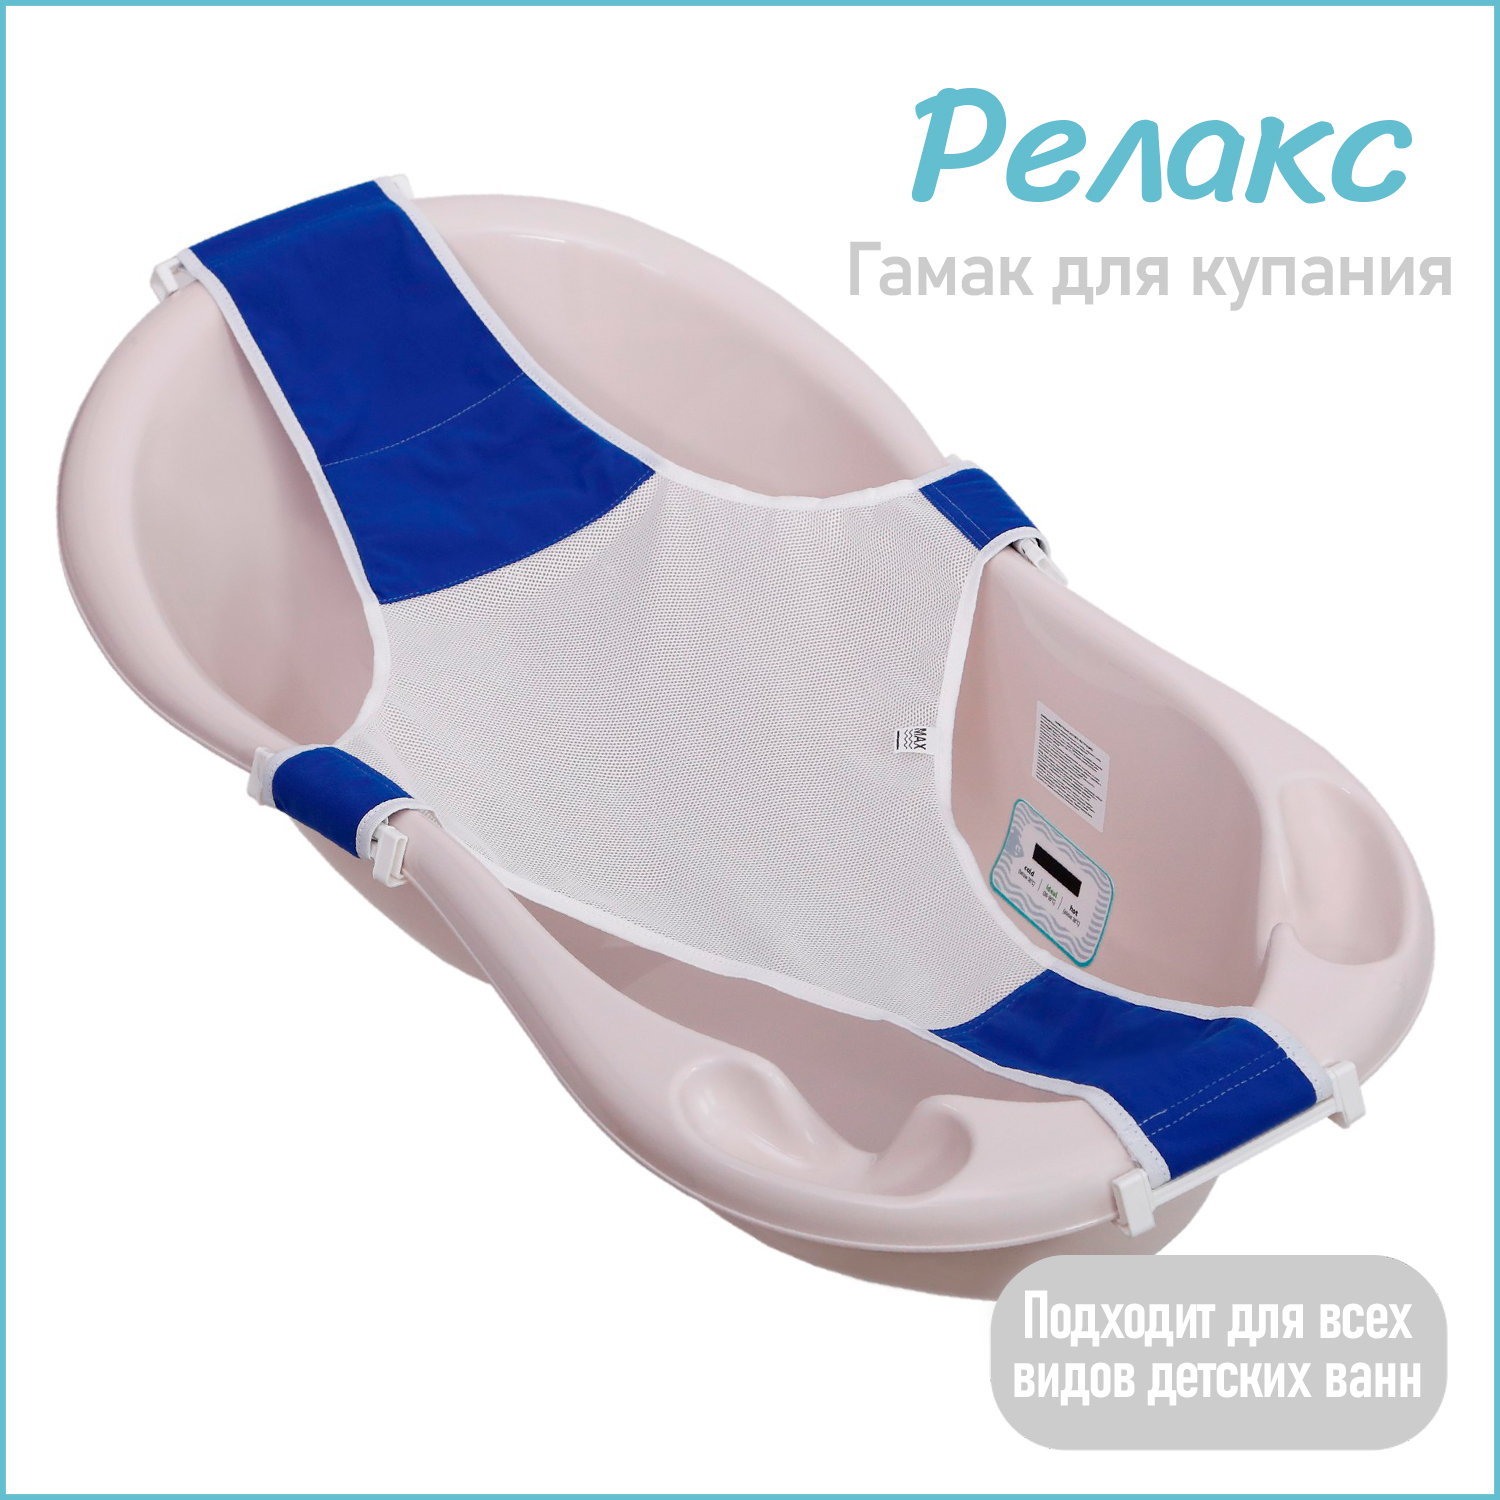 Горка гамак для купания новорожденных KidWick для детской ванночки Relax, синий, K0243000 горка для купания новорожденных kidwick дельфин фиолетовая